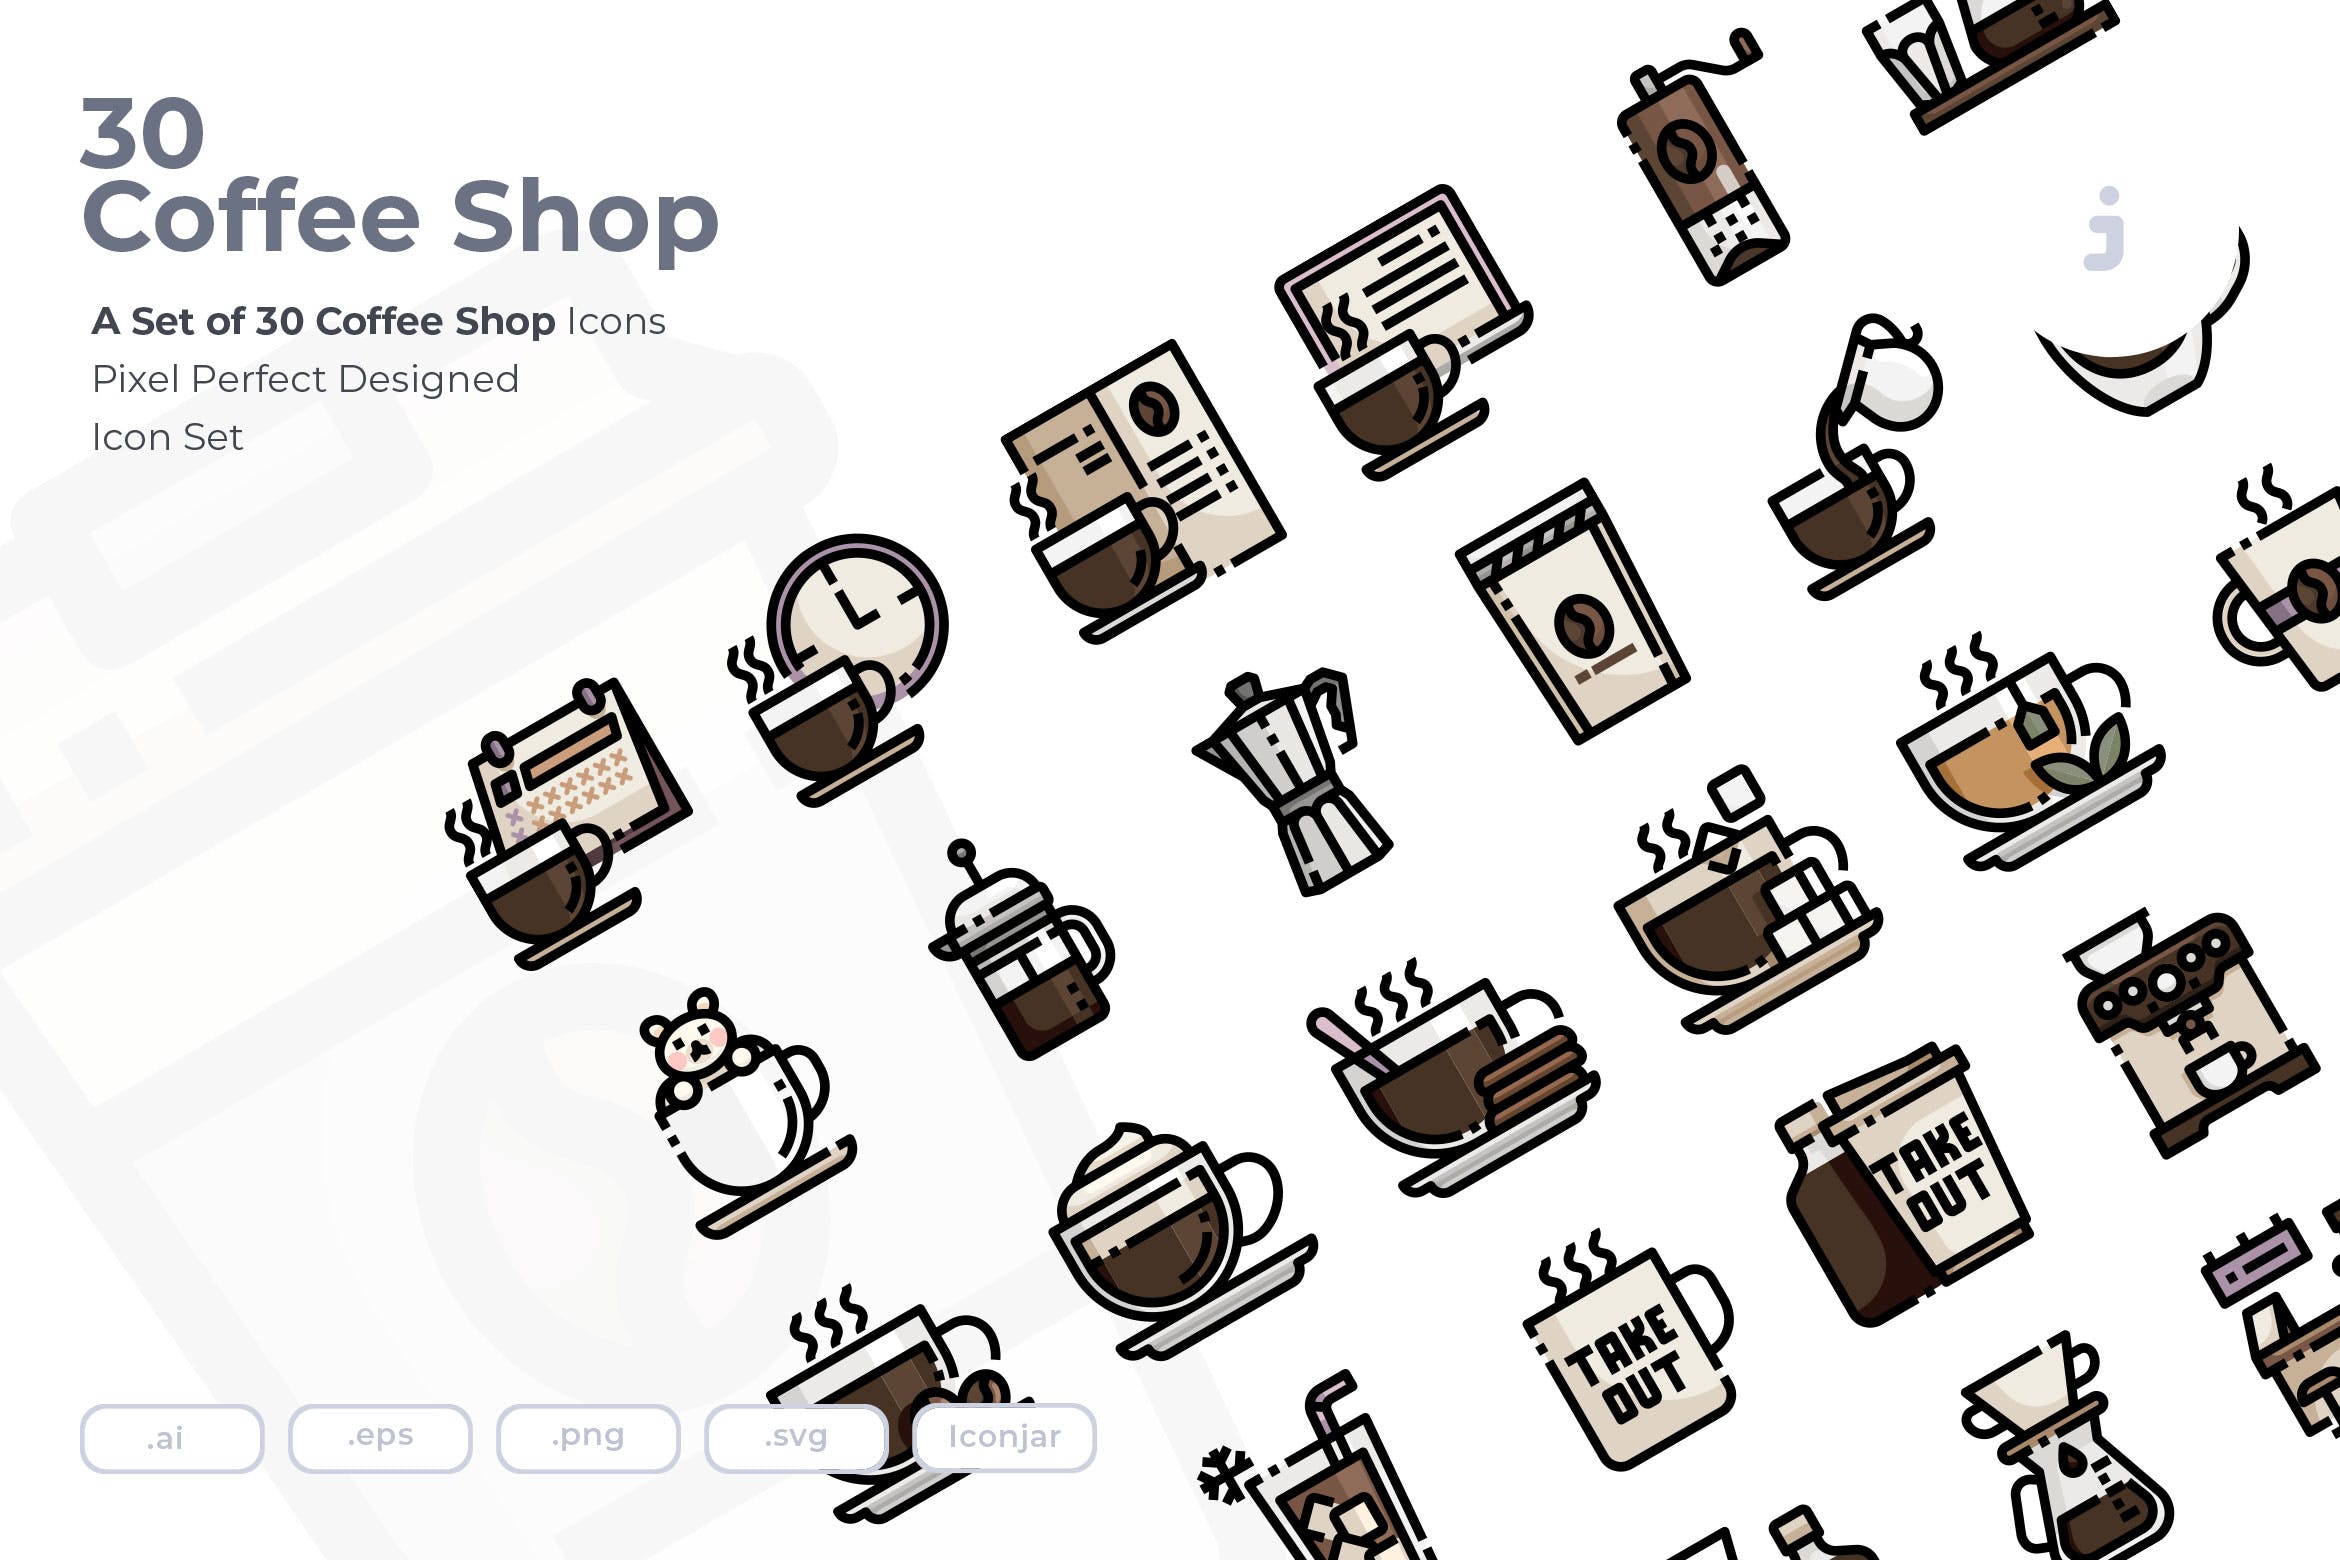 30枚咖啡/咖啡店矢量蚂蚁素材精选图标素材 30 Coffee Shop Icons插图